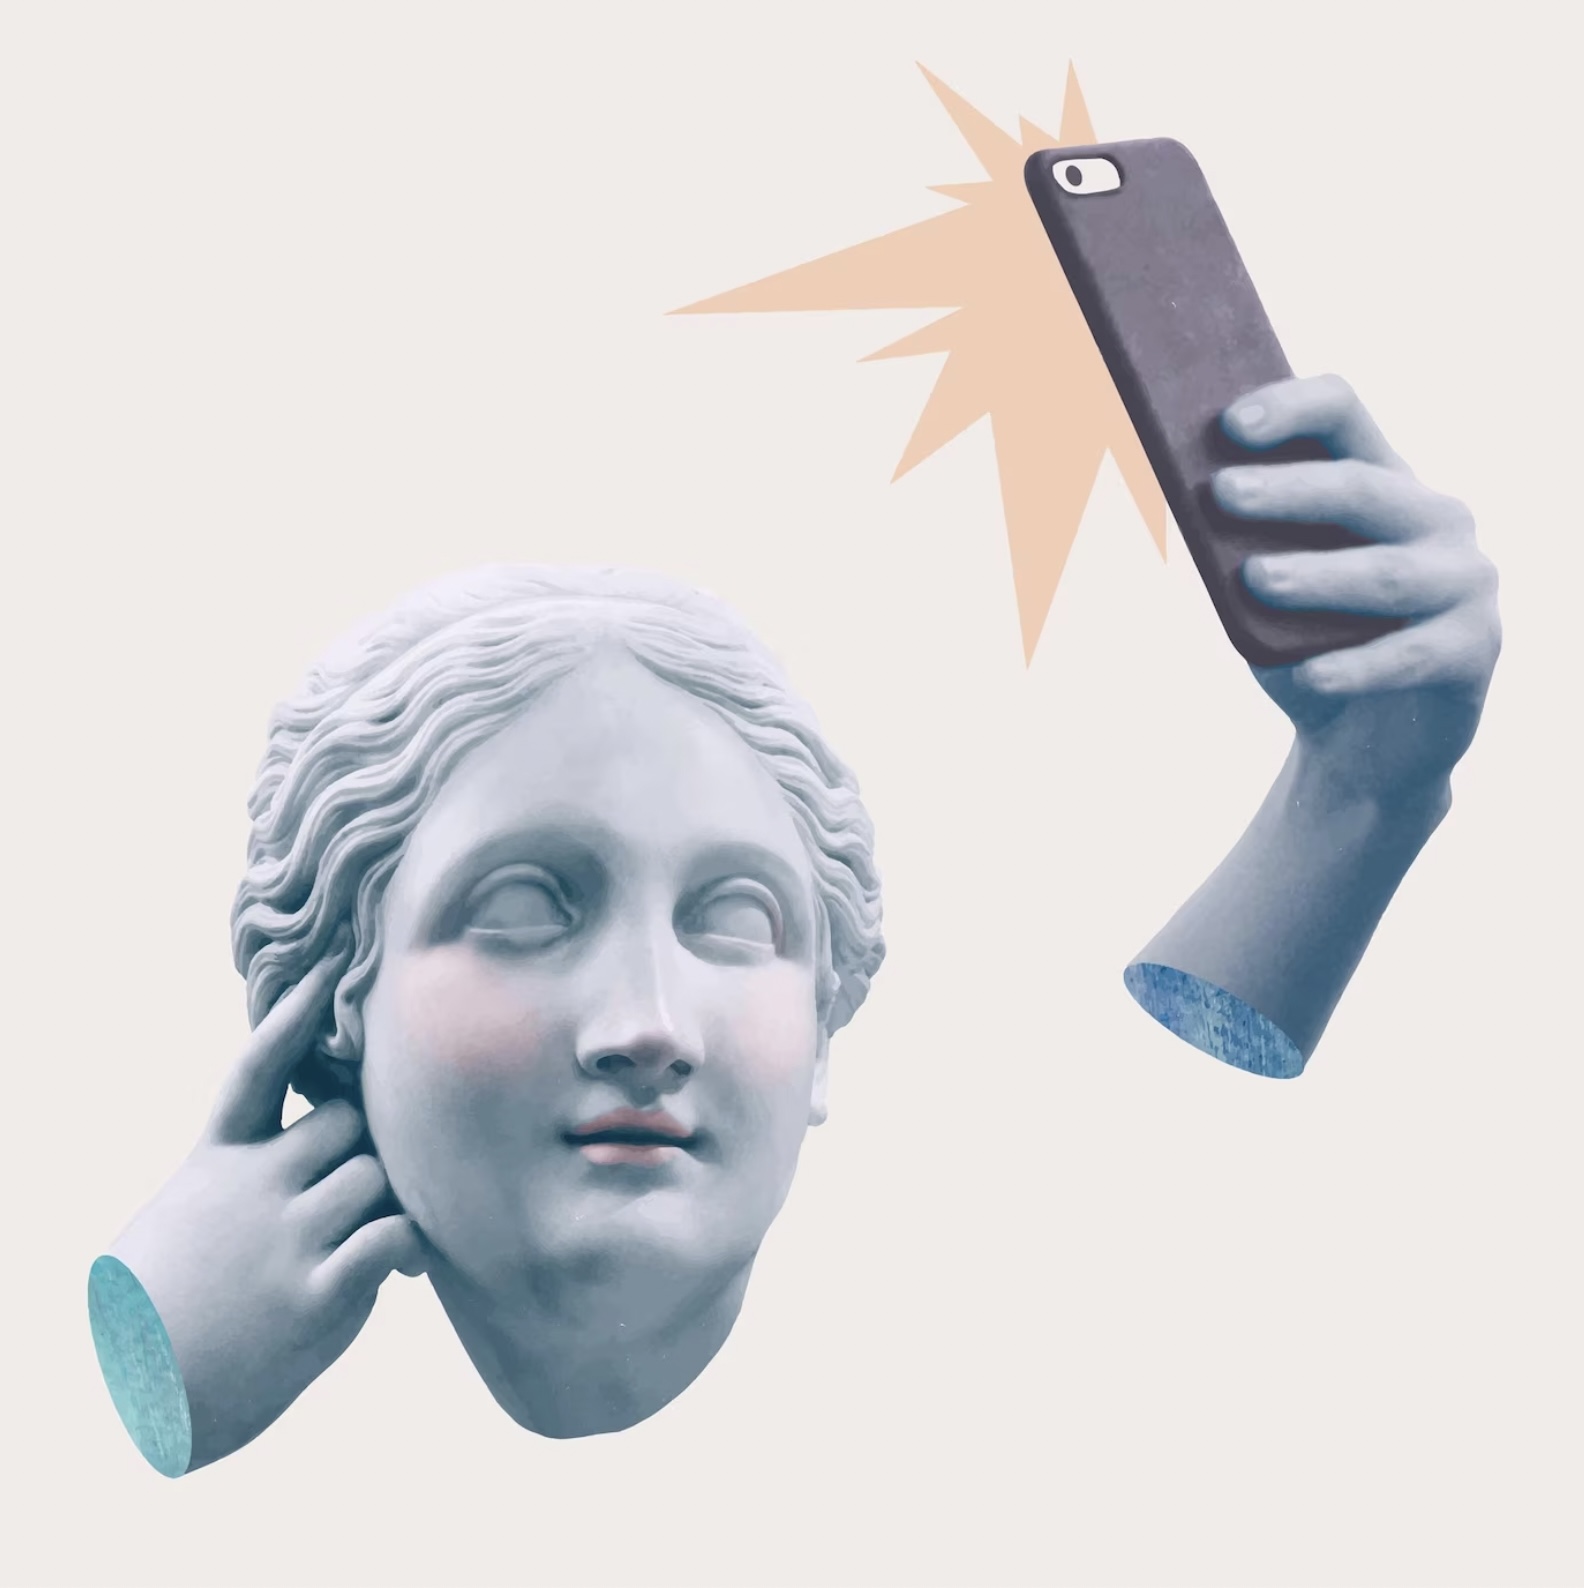 Imagen de un busto sacándose una foto con un teléfono.